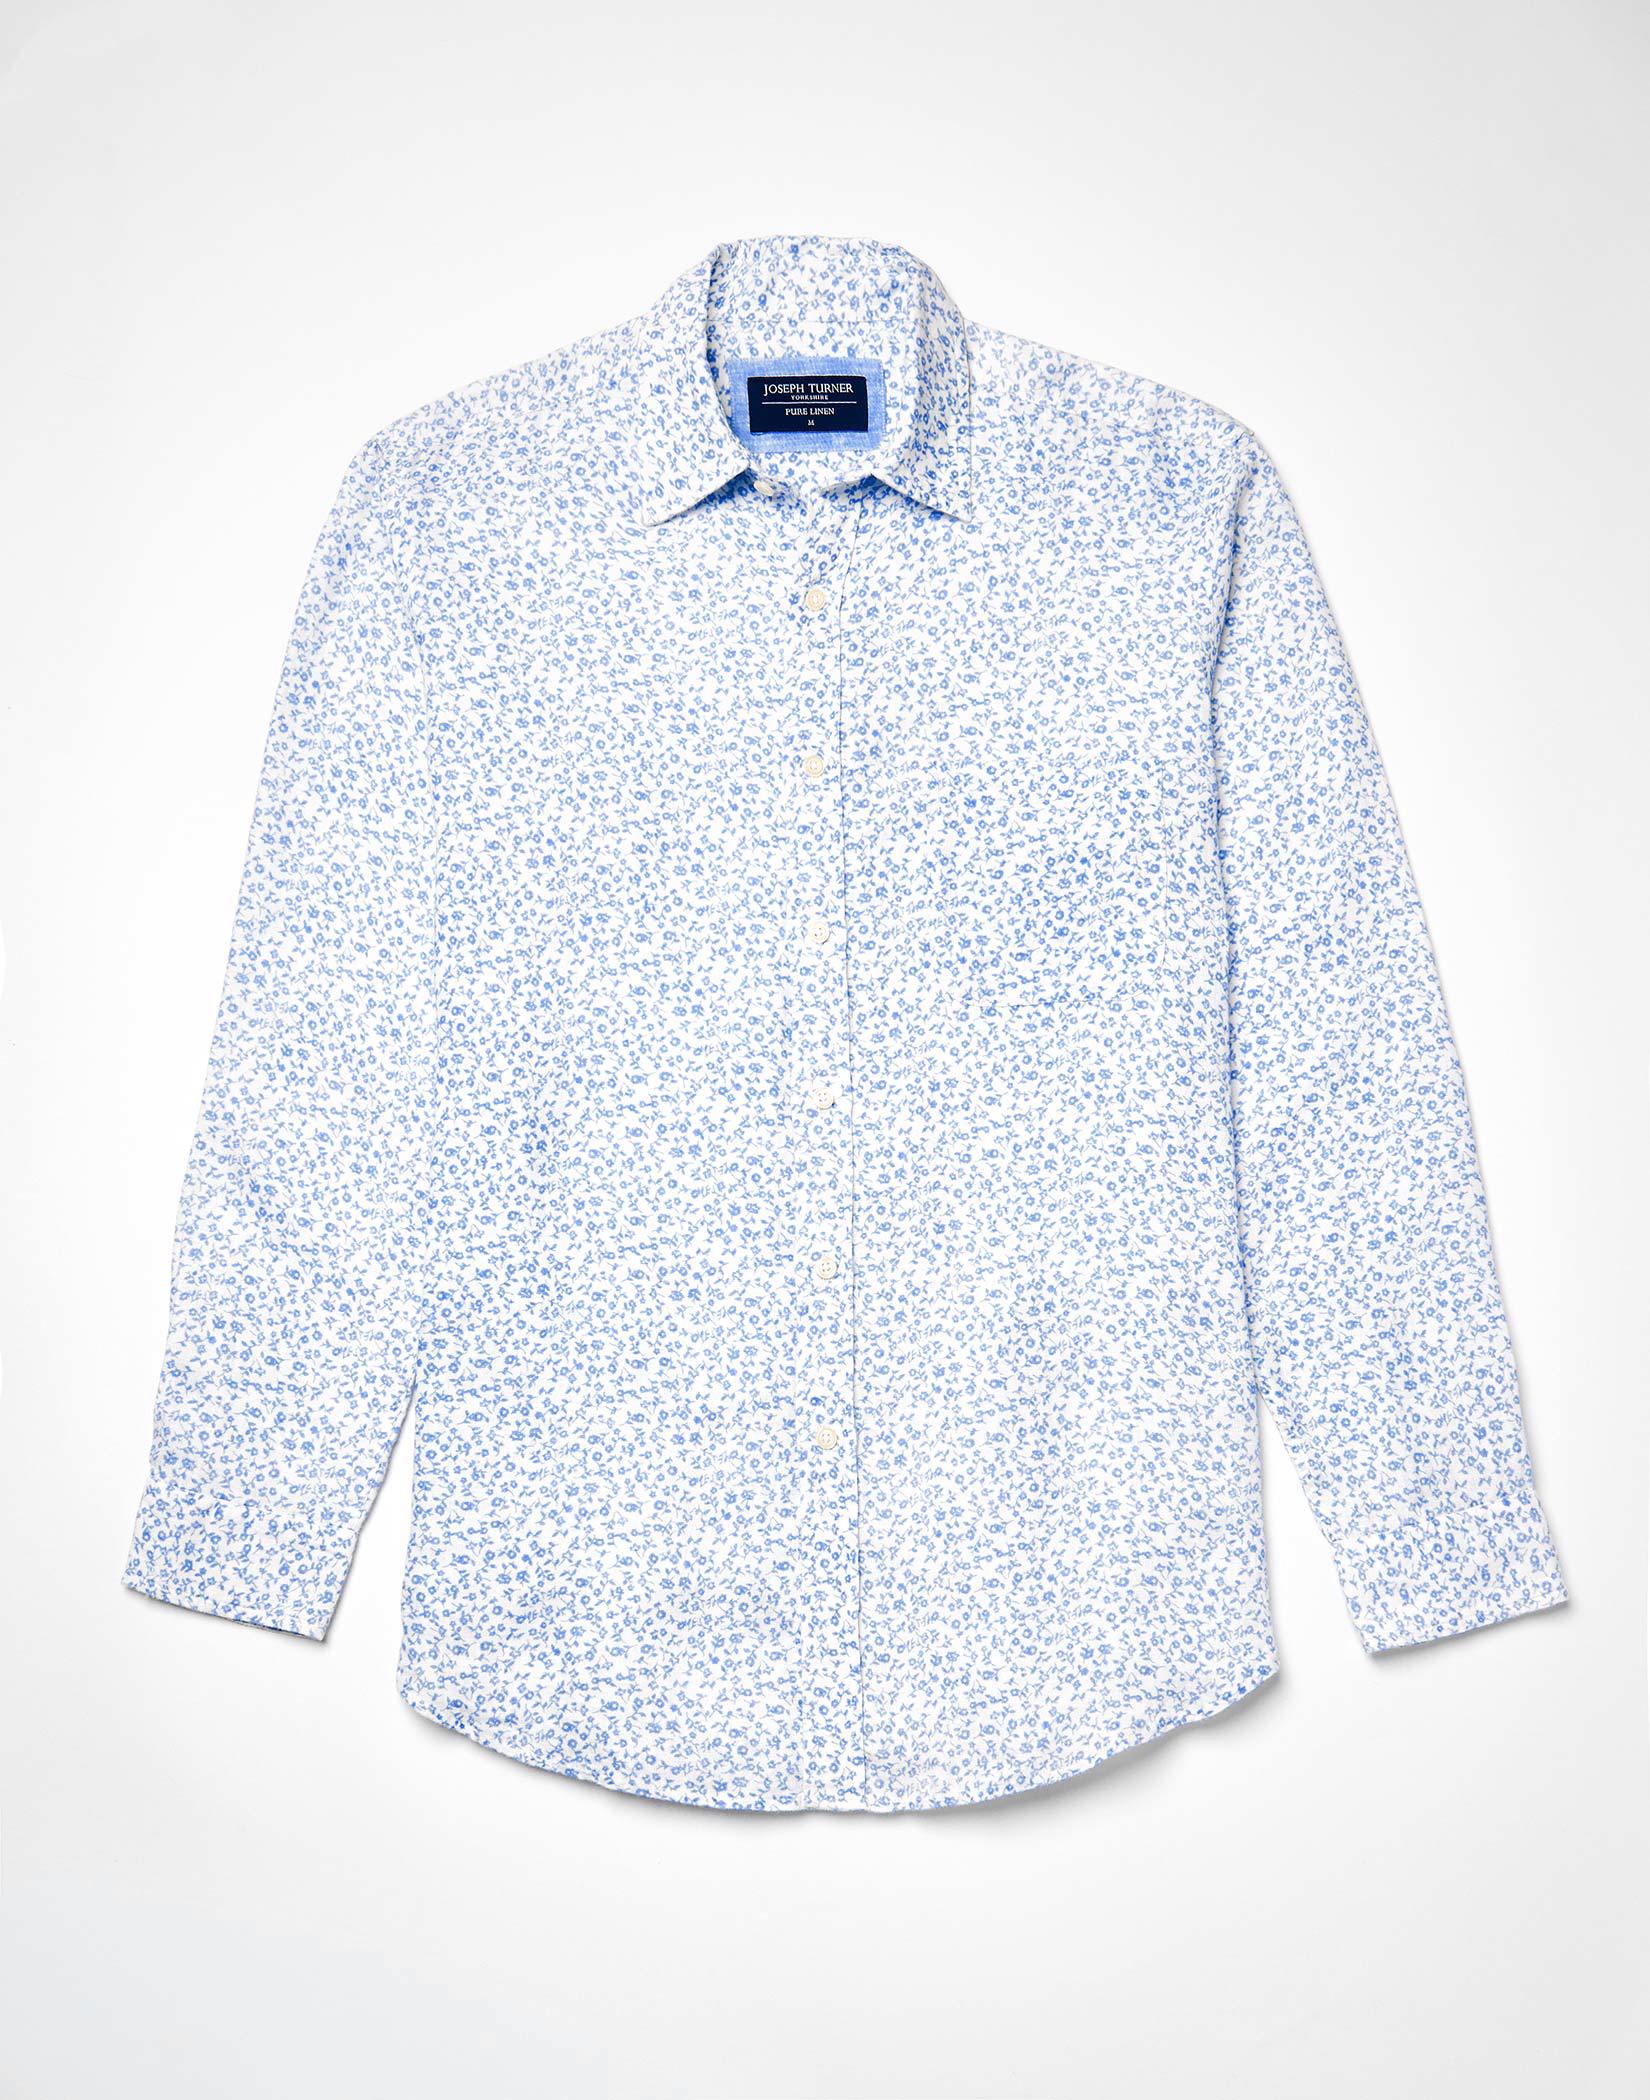 Holland & Sherry London Bespoke Floral Shirt Button Under Collar 17/33